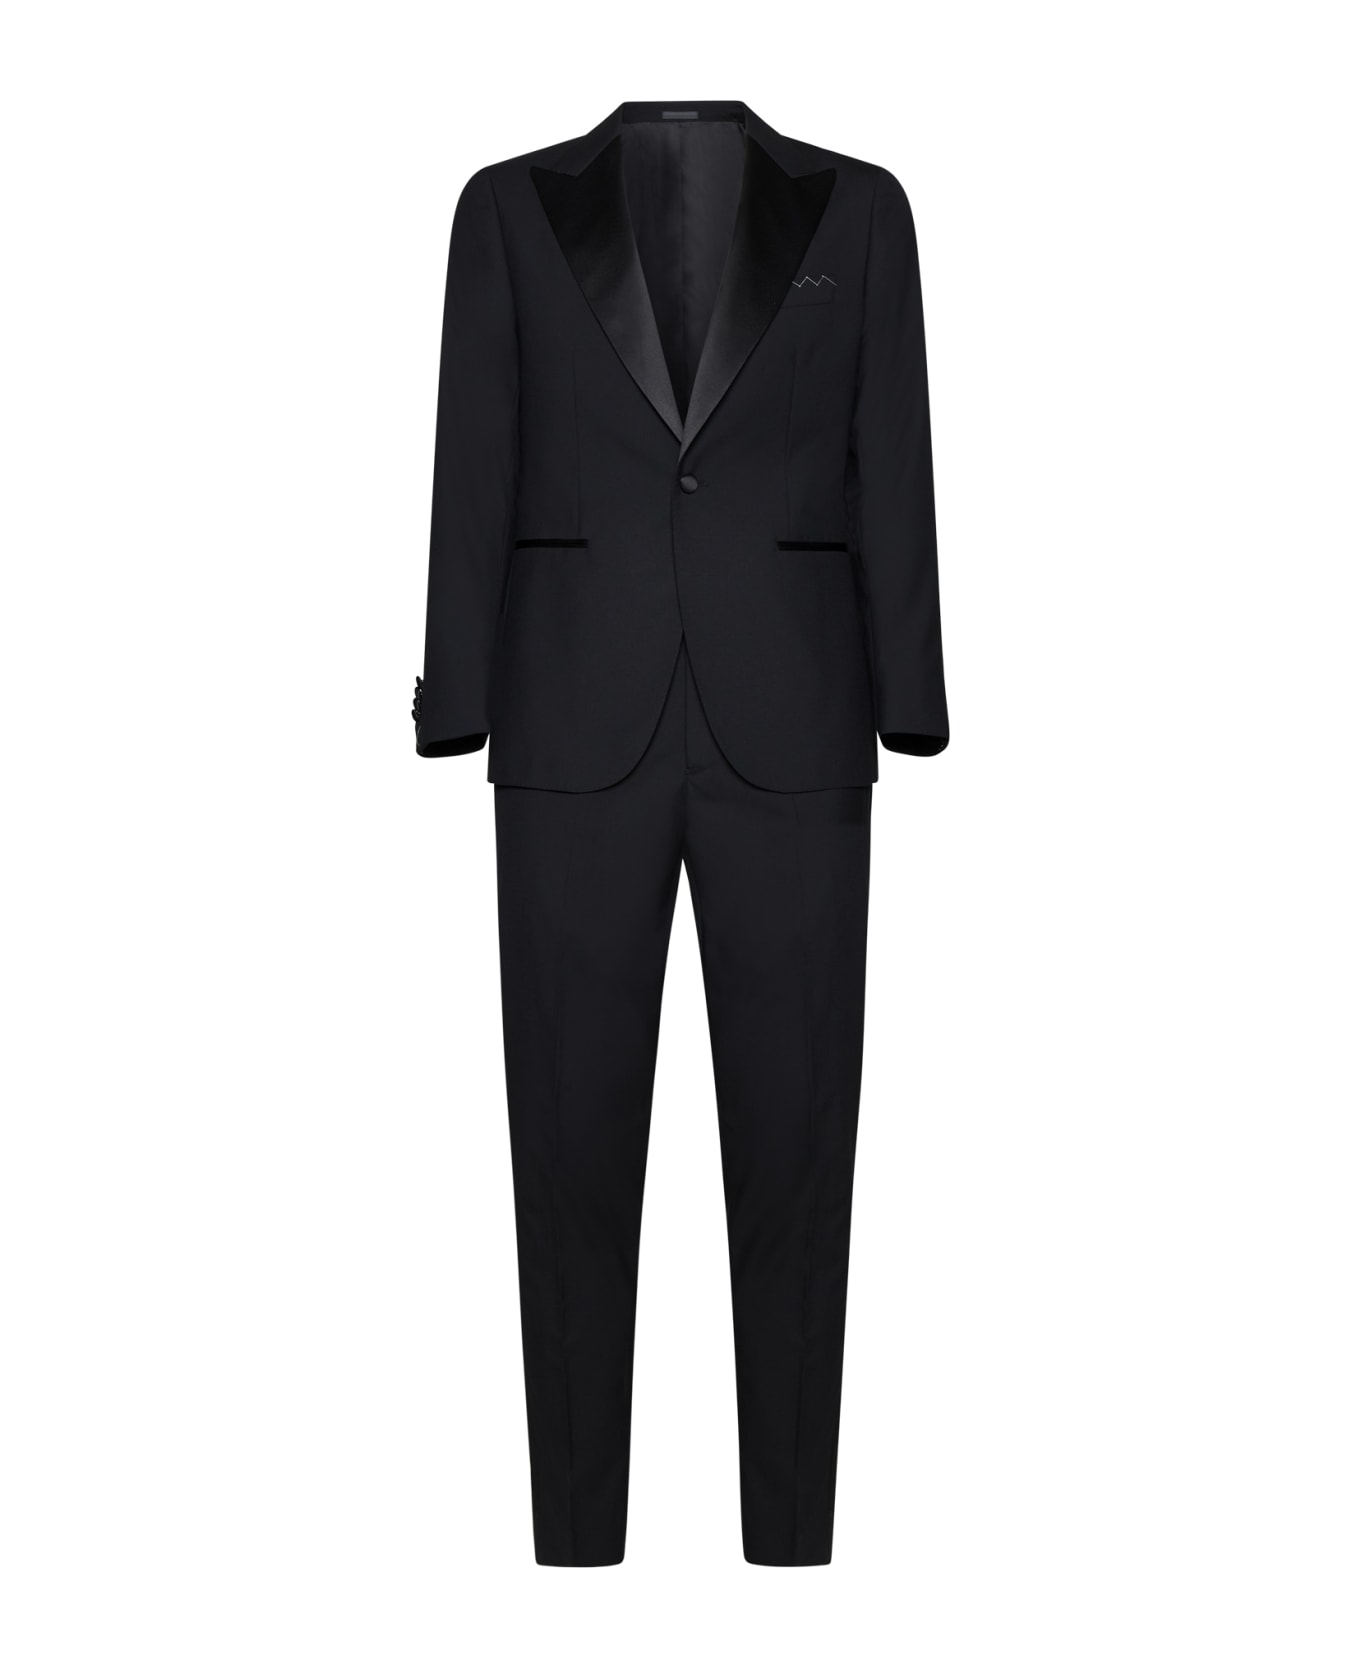 Low Brand Suit - Jet black